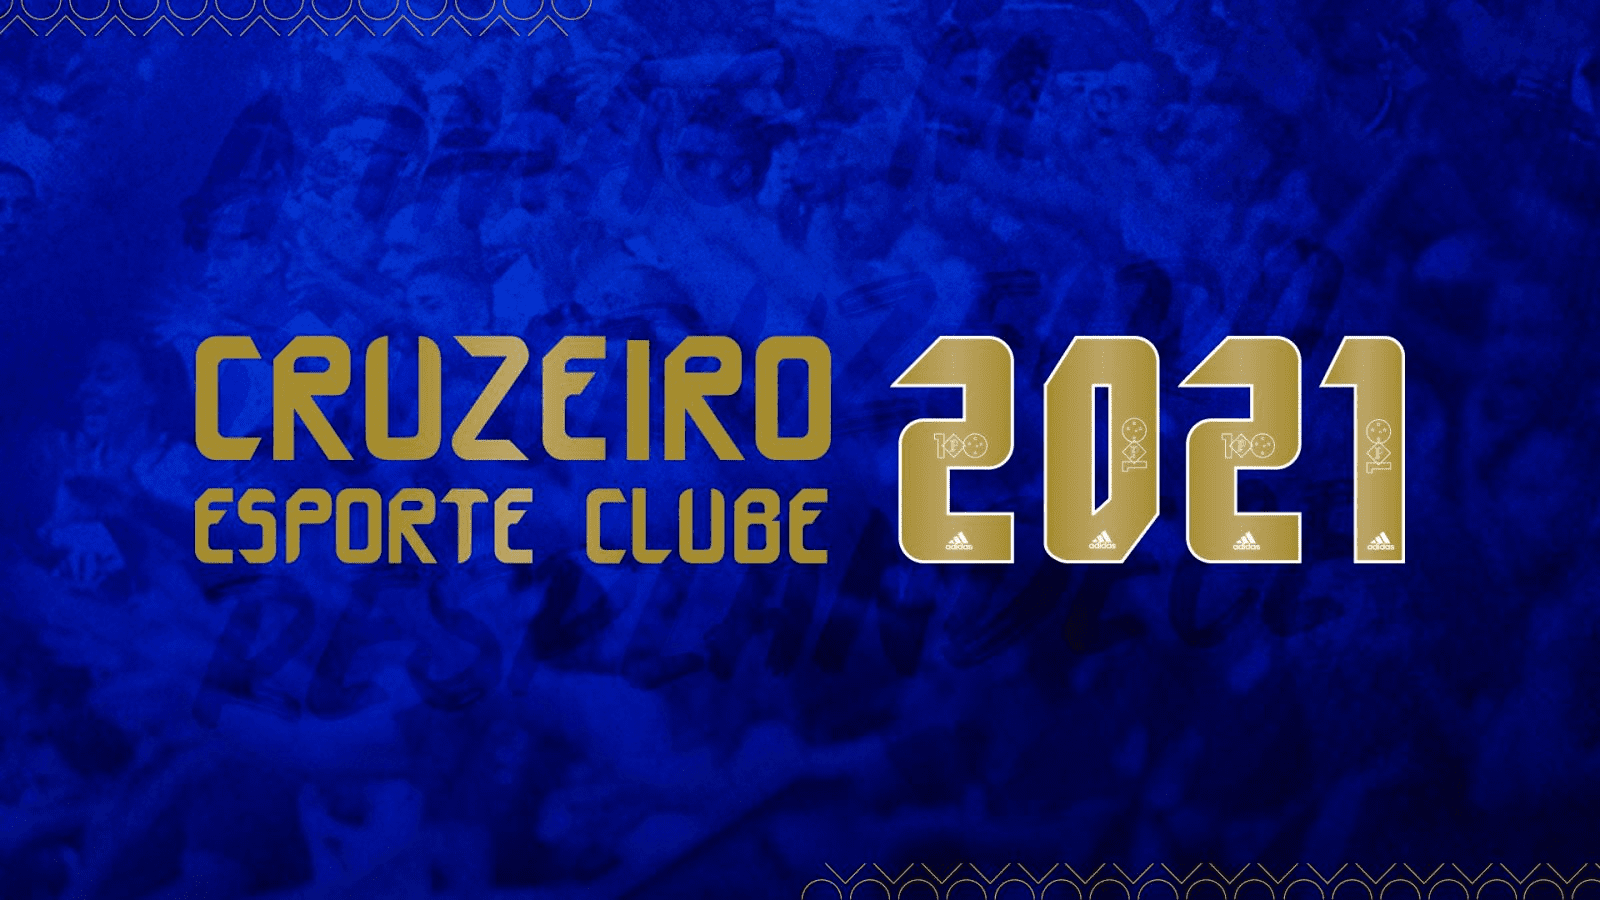 Cruzeiro estreia uniforme centenário